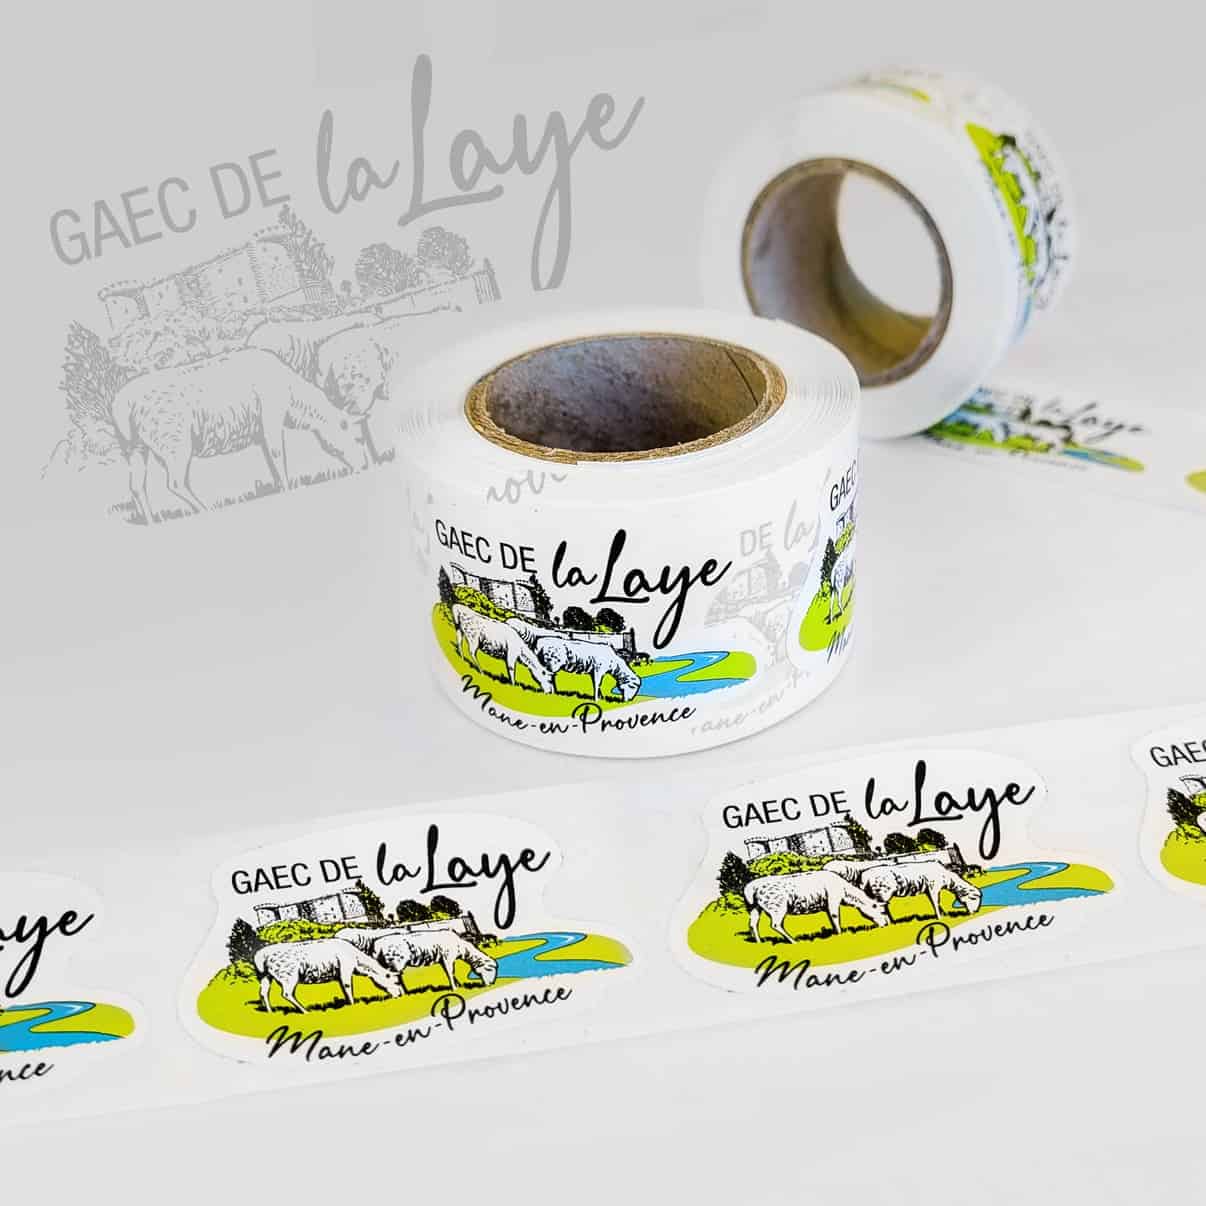 GAEC de La Laye - Mane en Provence - Etiquette personnalisée